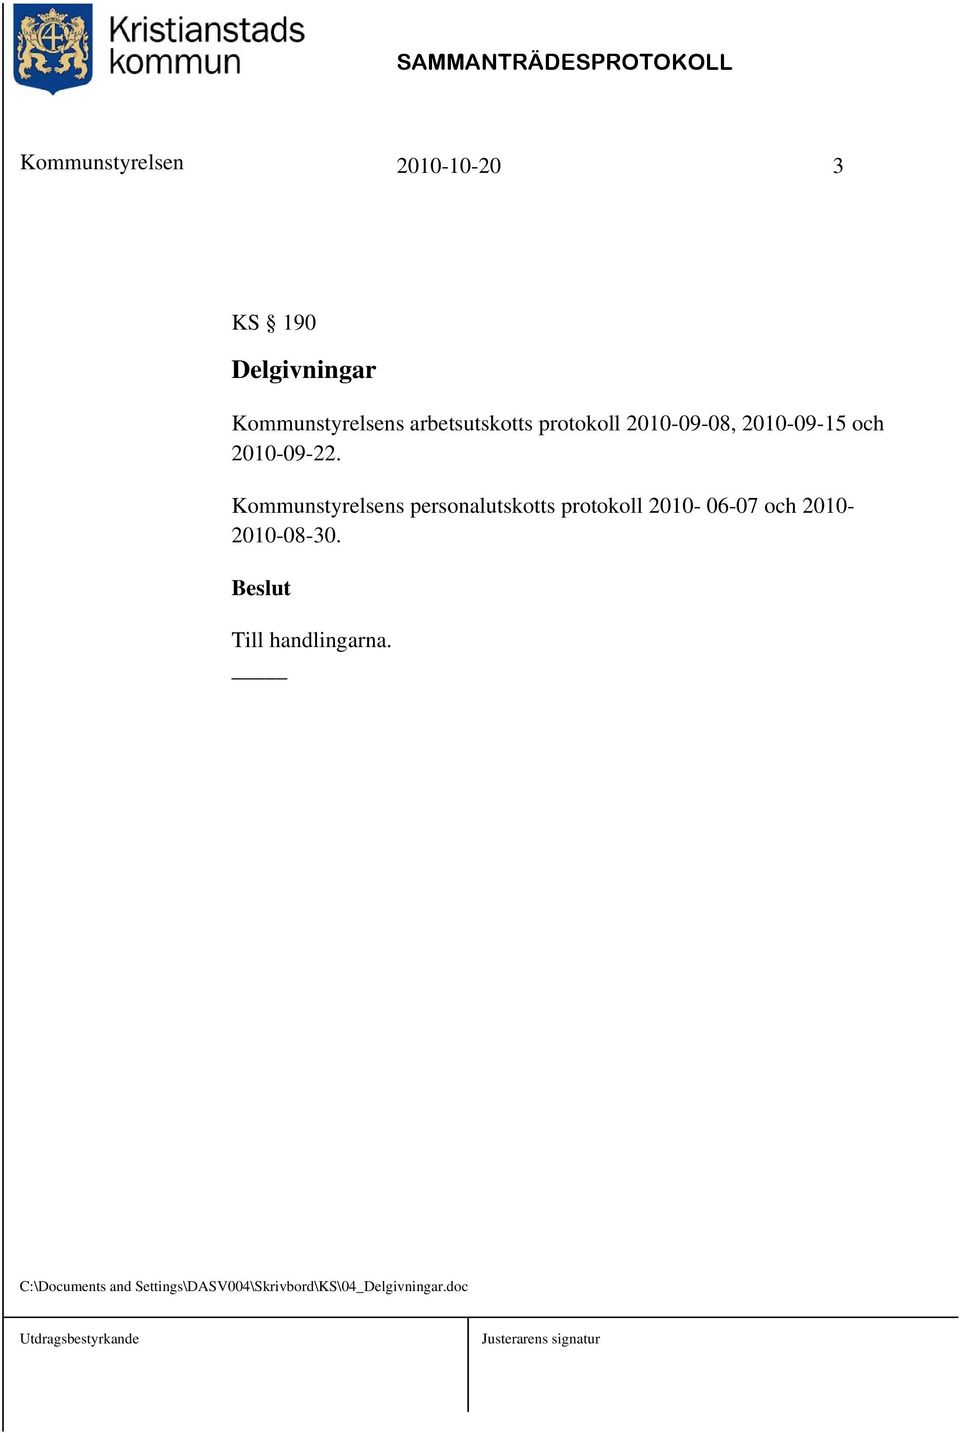 Kommunstyrelsens personalutskotts protokoll 2010-06-07 och 2010-2010-08-30.